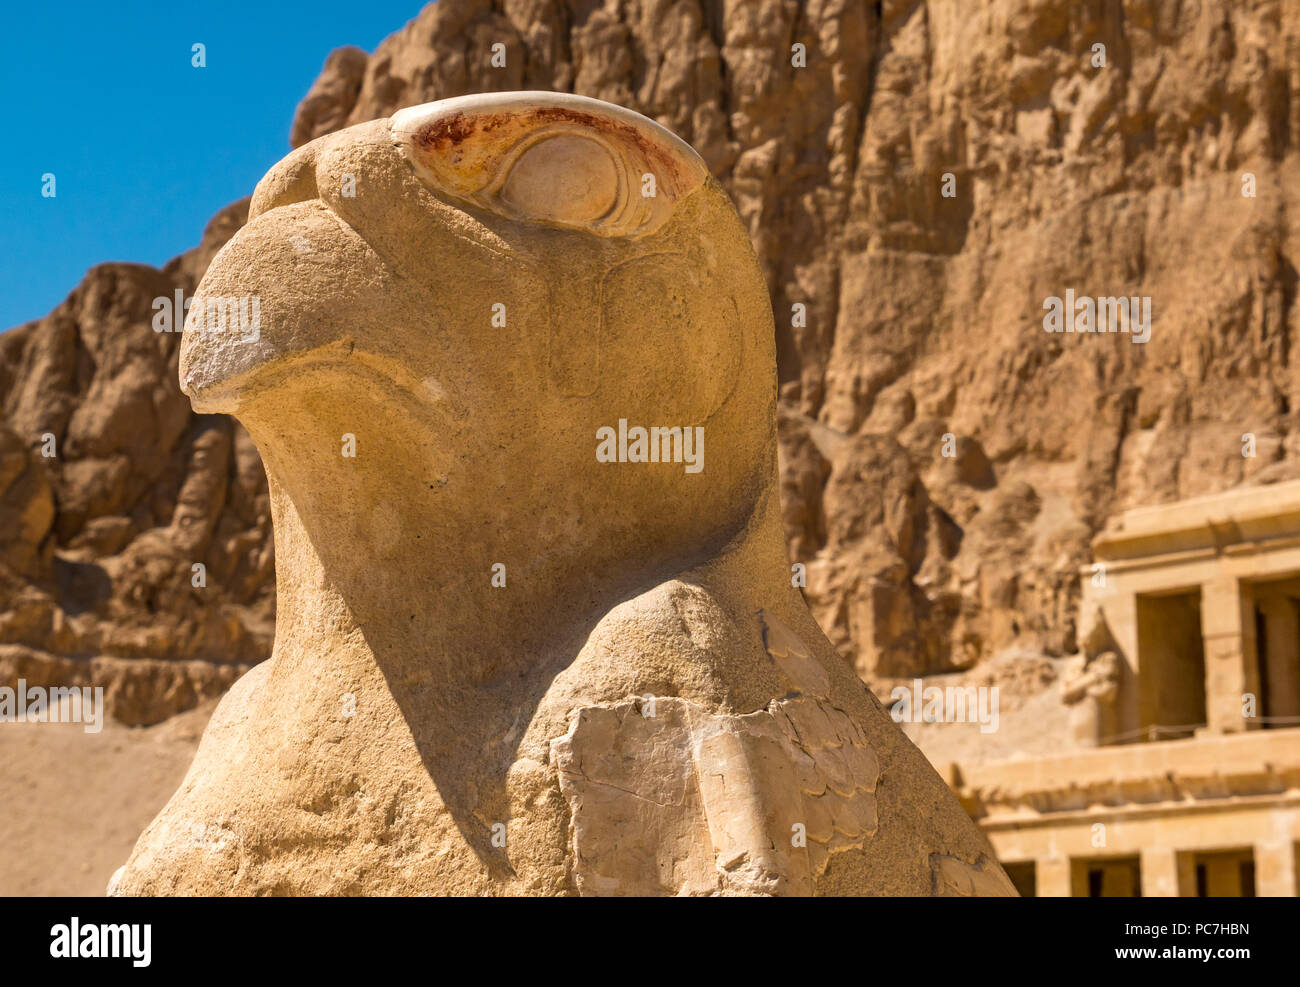 Close up di pietra scolpita simbolo egizio statua di Horus come un falco, Tempio mortuario di Hatshepsut, Valle dei Re, Luxor, Egitto, Africa Foto Stock